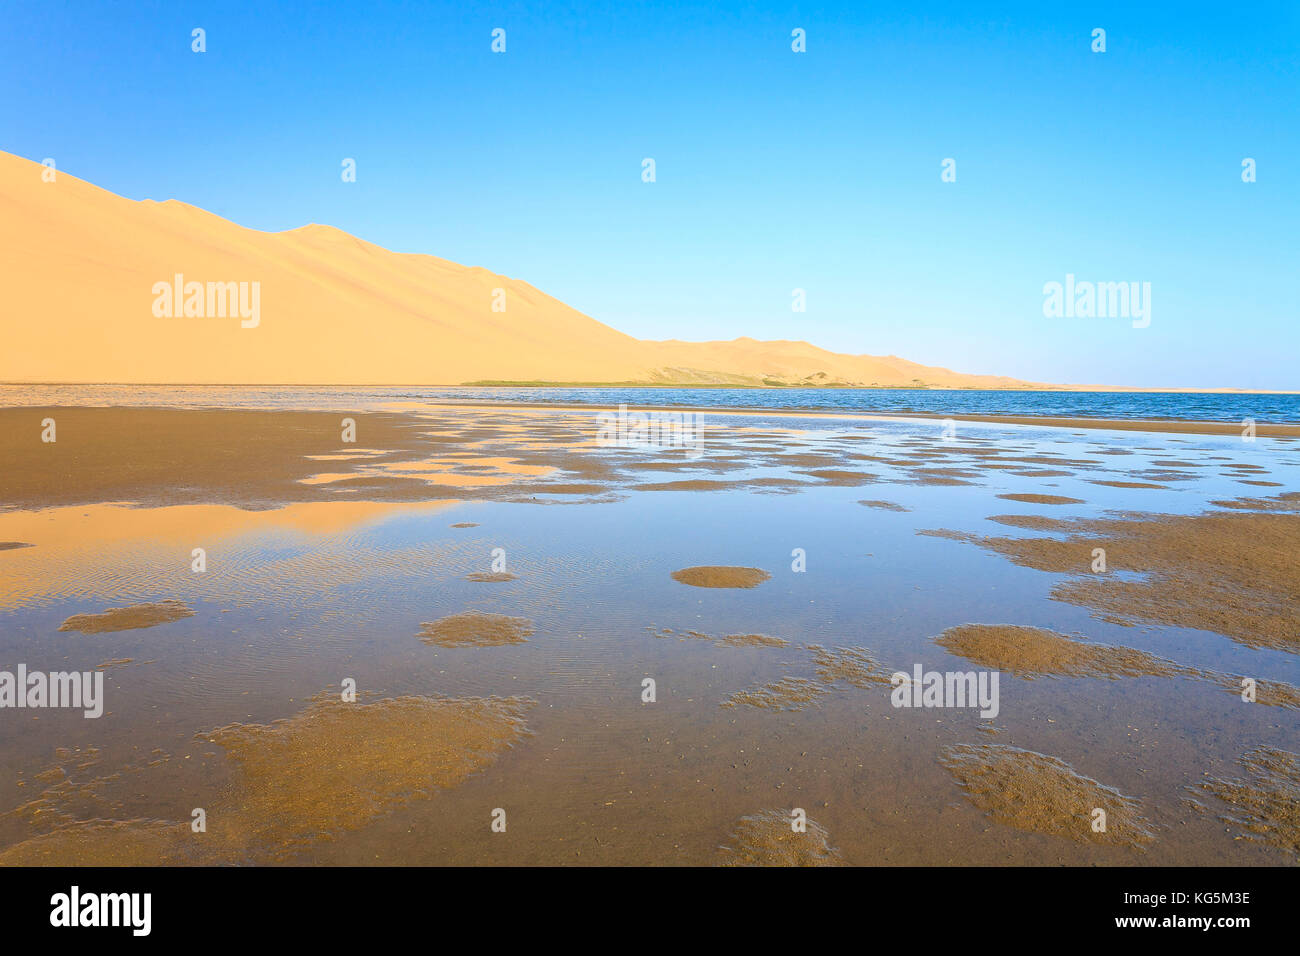 Las dunas de arena se refleja en la laguna junto al océano Atlántico, la bahía de Walvis desierto Namib región erongo namibia África meridional Foto de stock